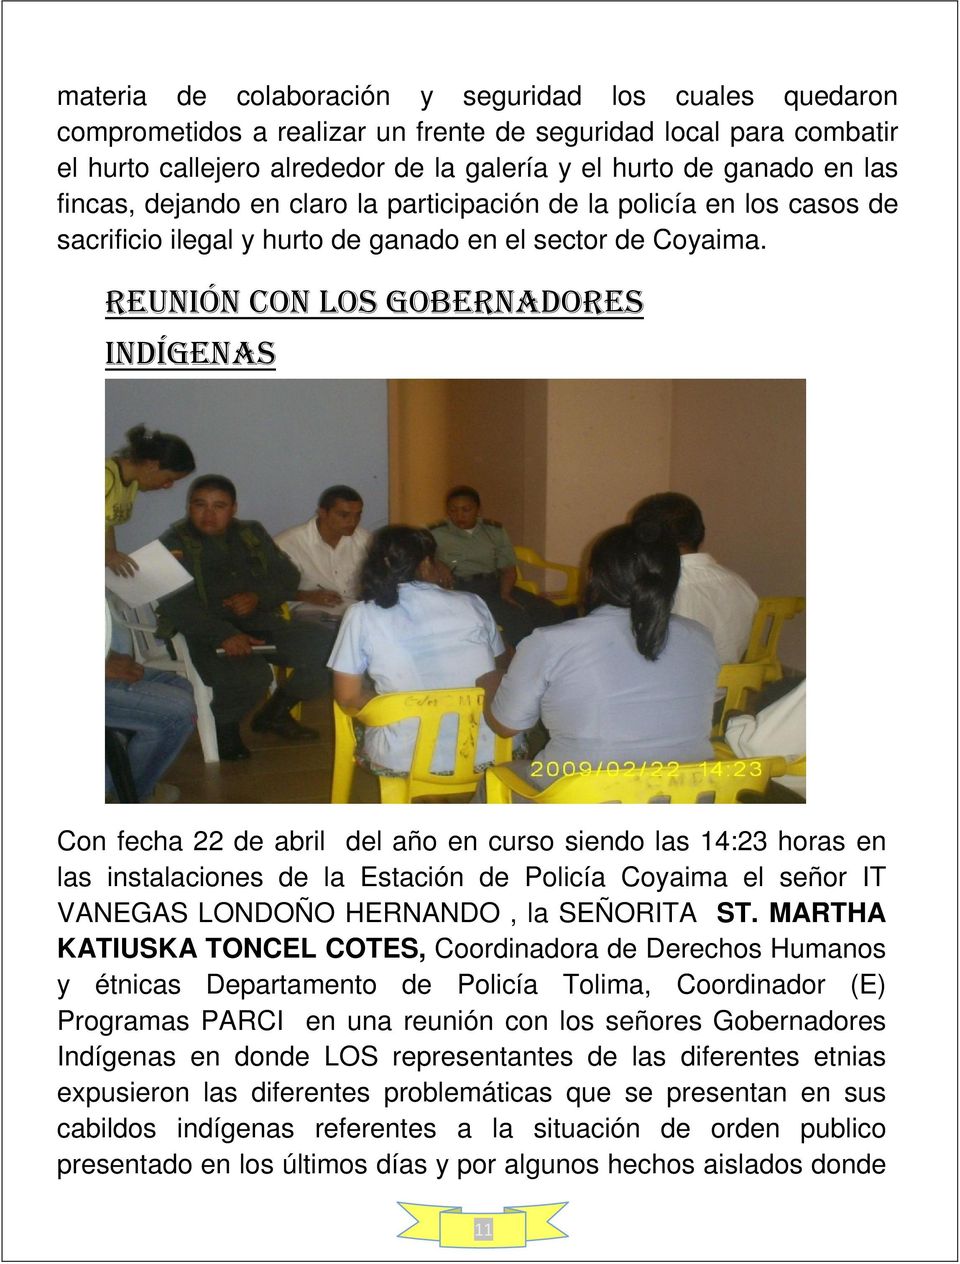 Reunión con los gobernadores indígenas Con fecha 22 de abril del año en curso siendo las 14:23 horas en las instalaciones de la Estación de Policía Coyaima el señor IT VANEGAS LONDOÑO HERNANDO, la